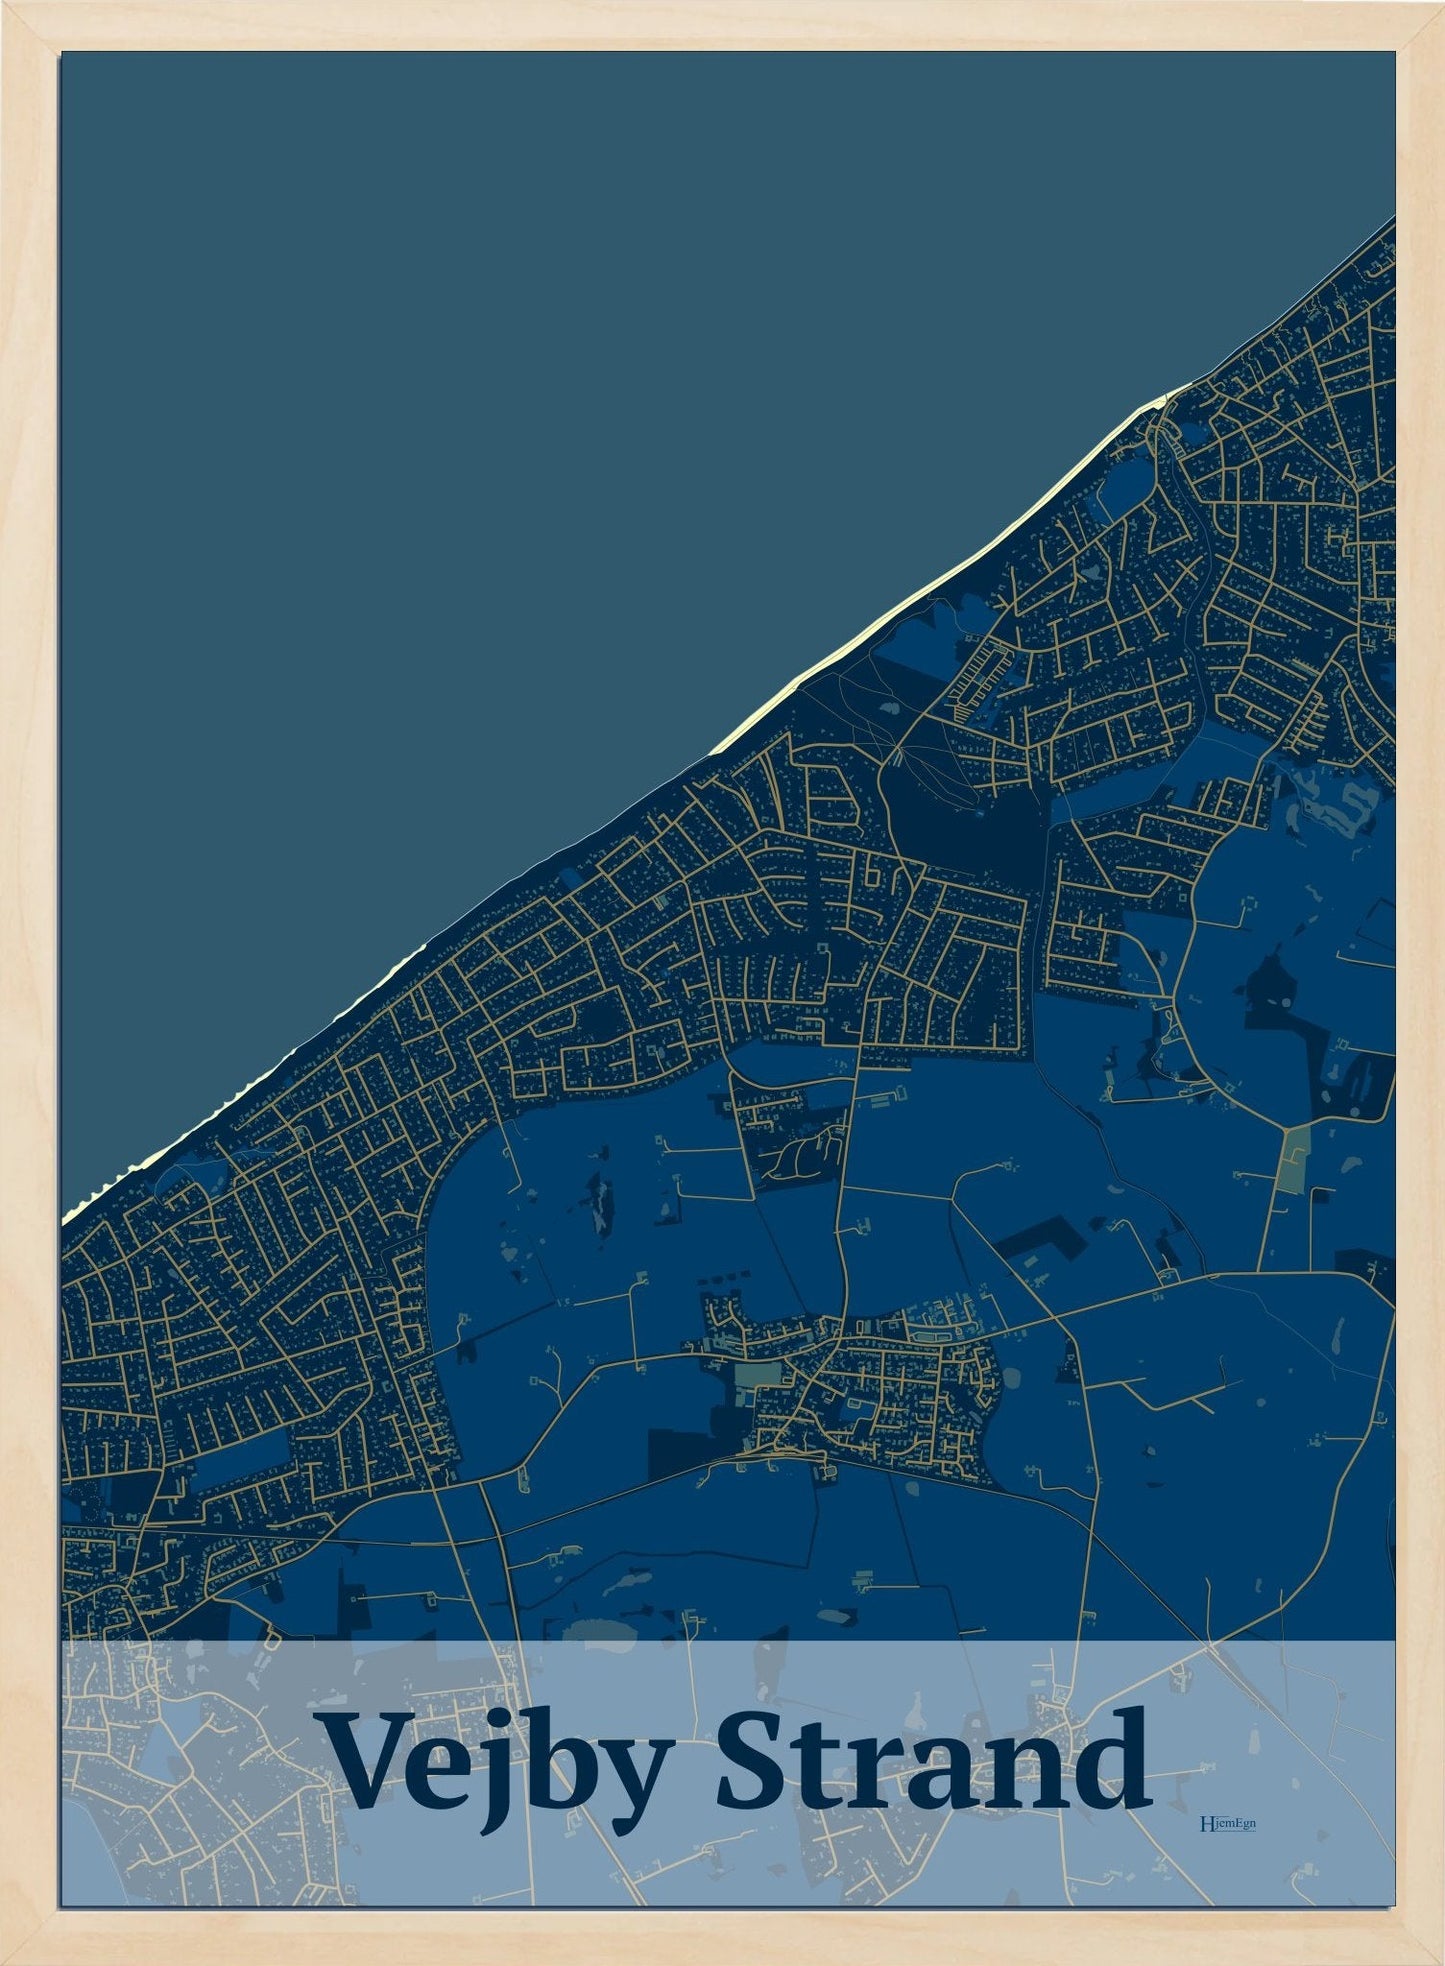 Vejby Strand plakat i farve mørk blå og HjemEgn.dk design firkantet. Design bykort for Vejby Strand